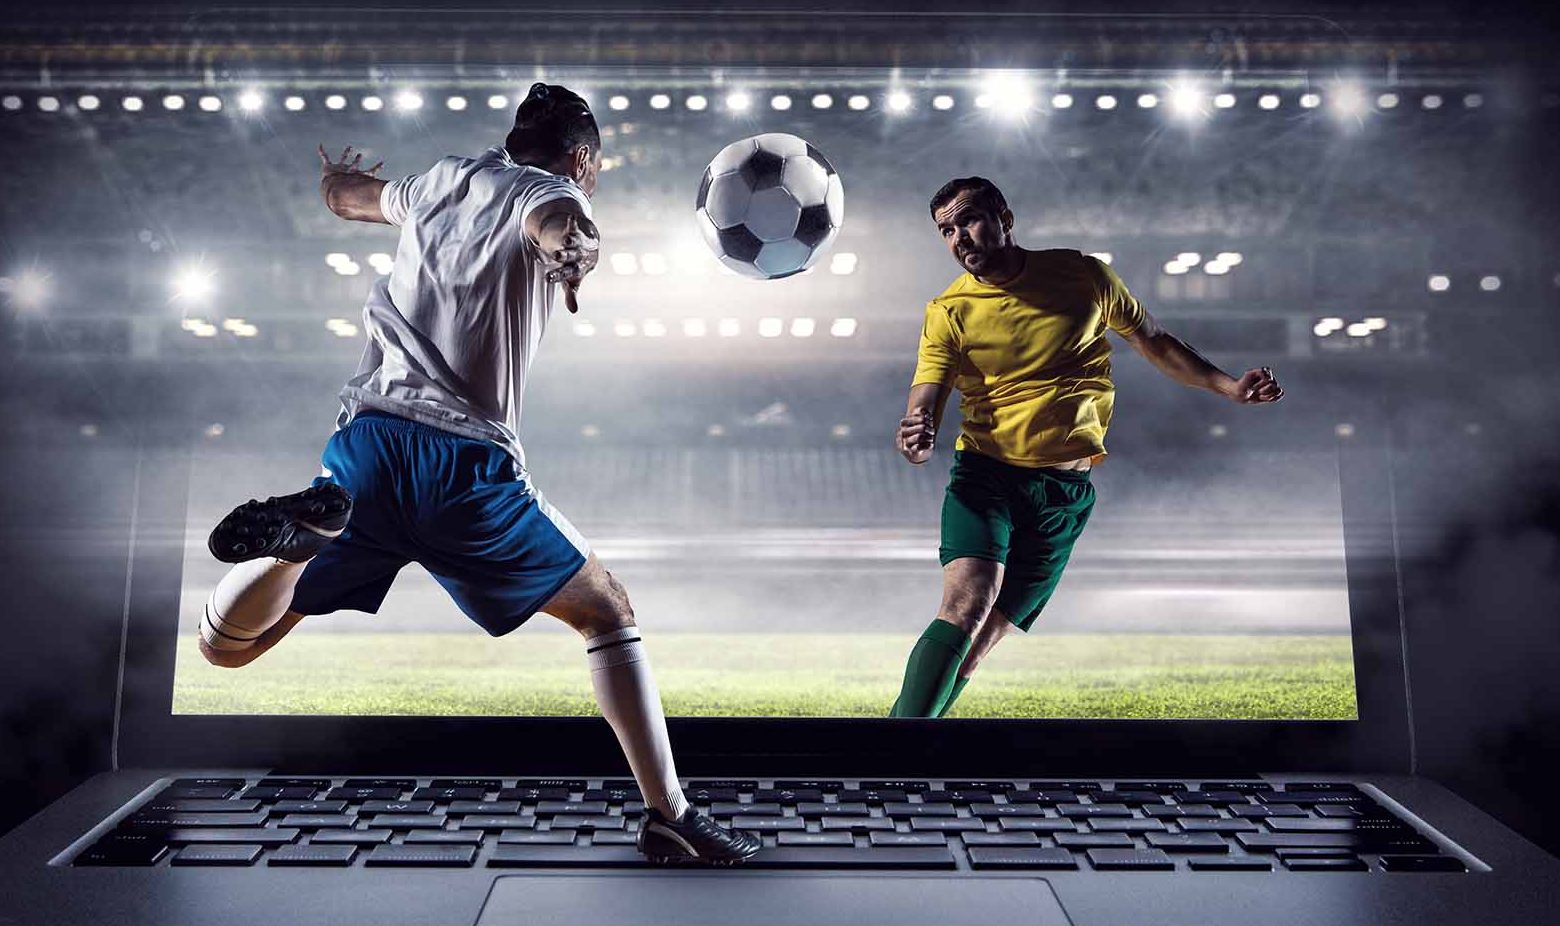 Моментальные ставки онлайн на спорт играть игровые автоматы бесплатно atronic